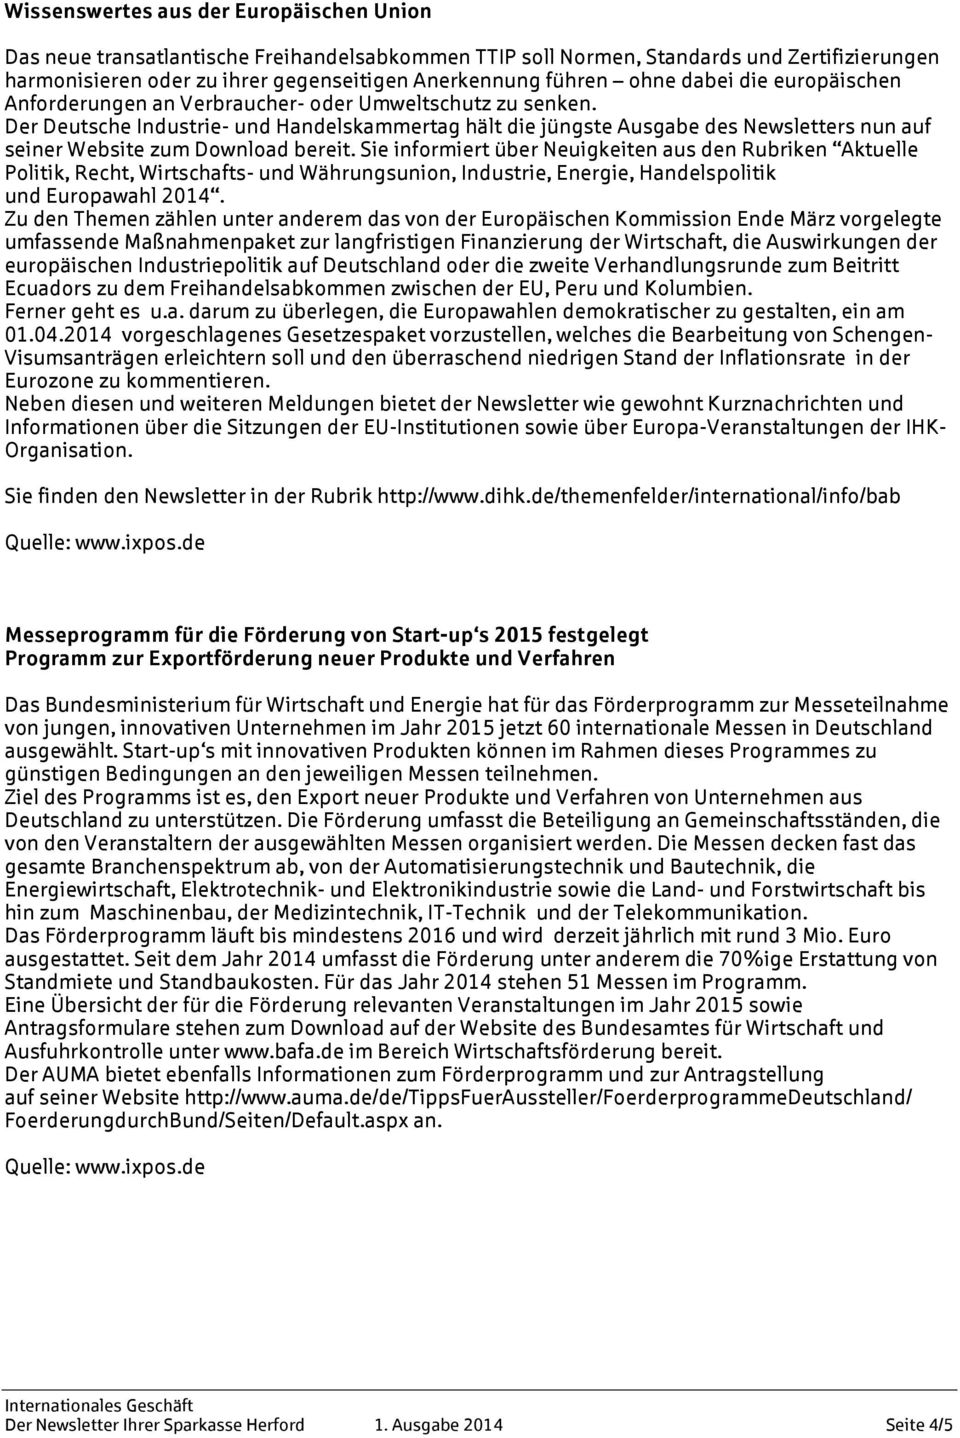 Der Deutsche Industrie- und Handelskammertag hält die jüngste Ausgabe des Newsletters nun auf seiner Website zum Download bereit.